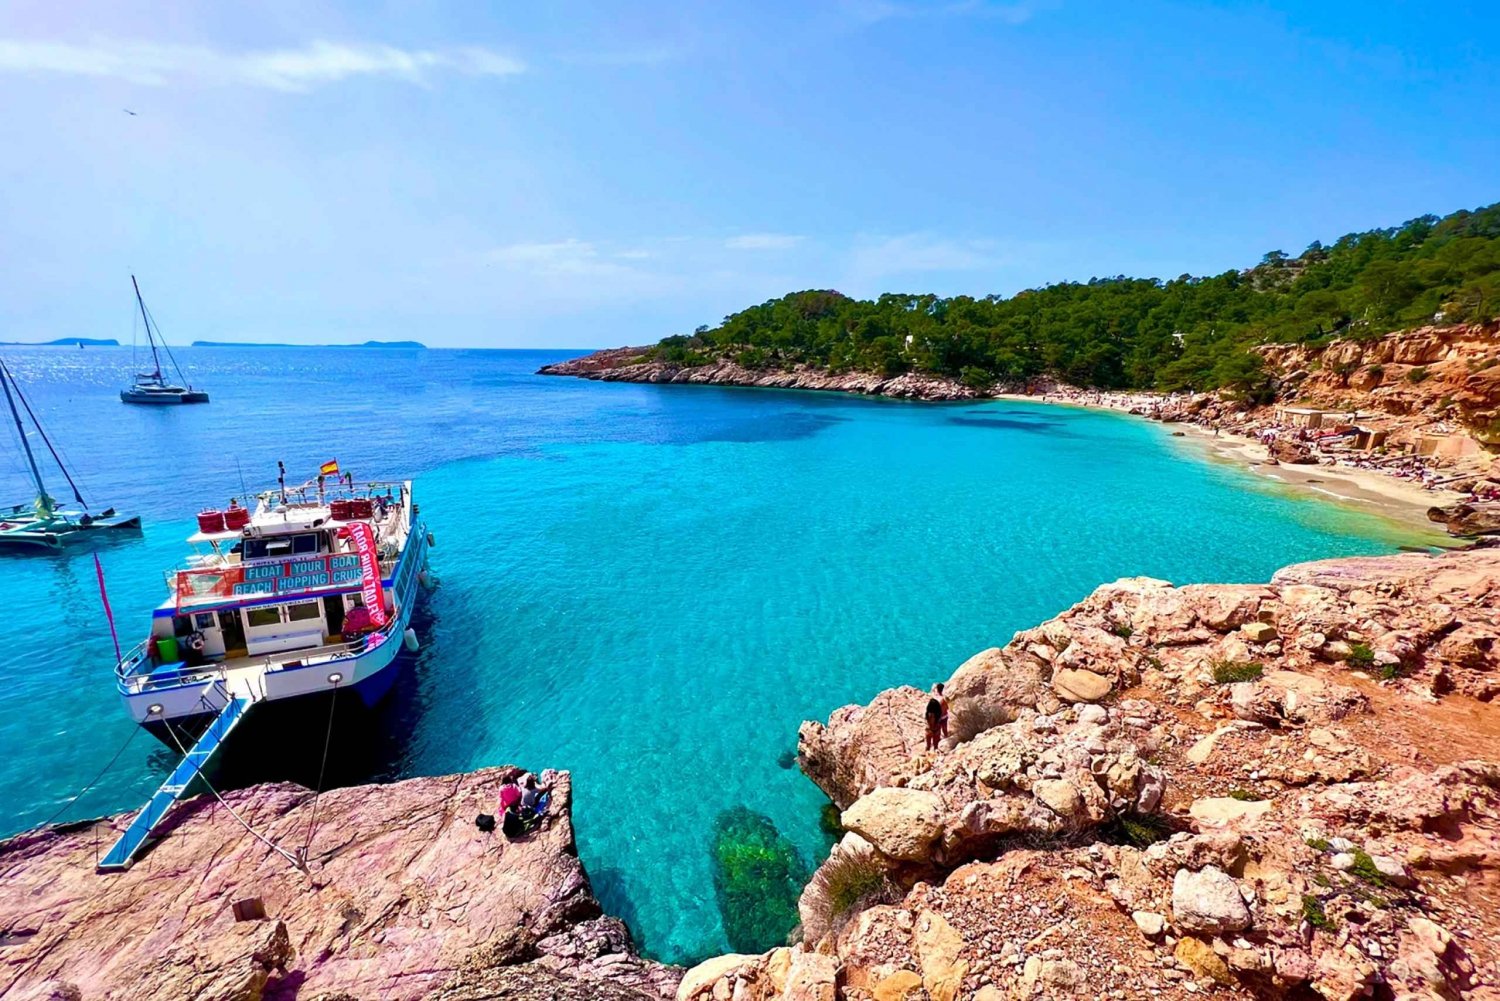 Ibiza: Cala Salada & Ses Margalides Cruise with Snorkeling